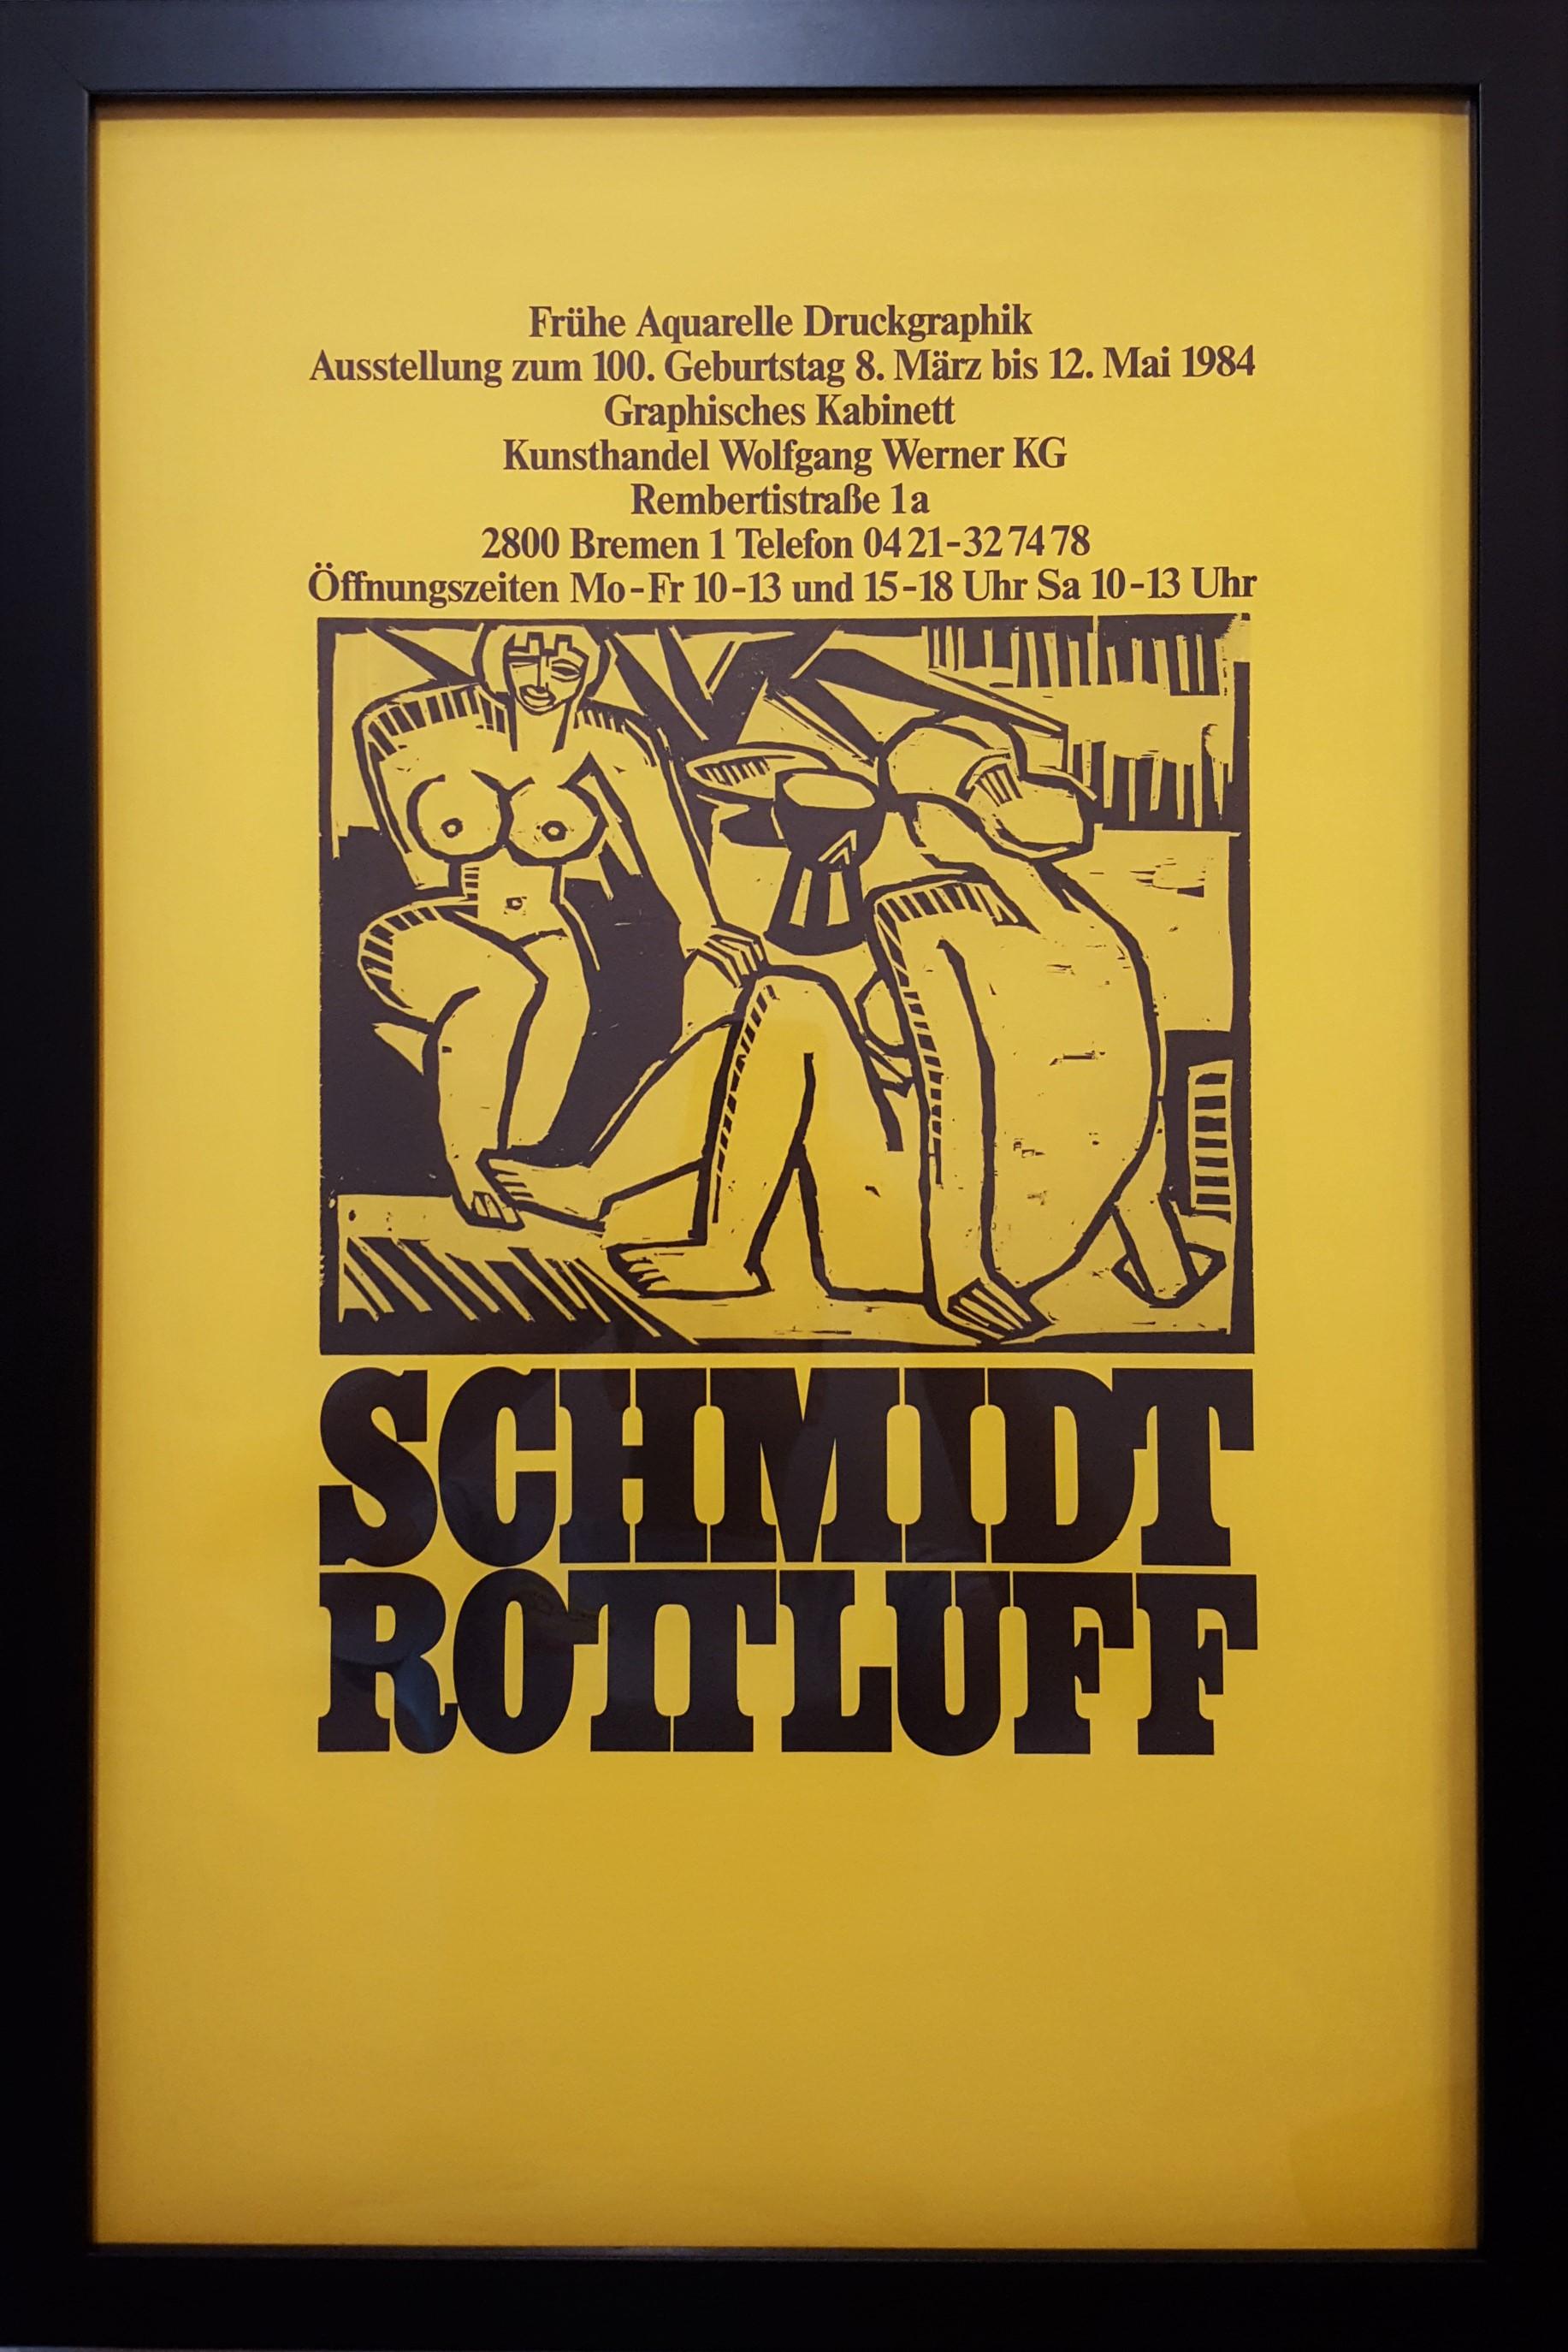 Kunsthandel Wolfgang Werner KG (Nudes) - Print by (After) Karl Schmidt-Rottluff